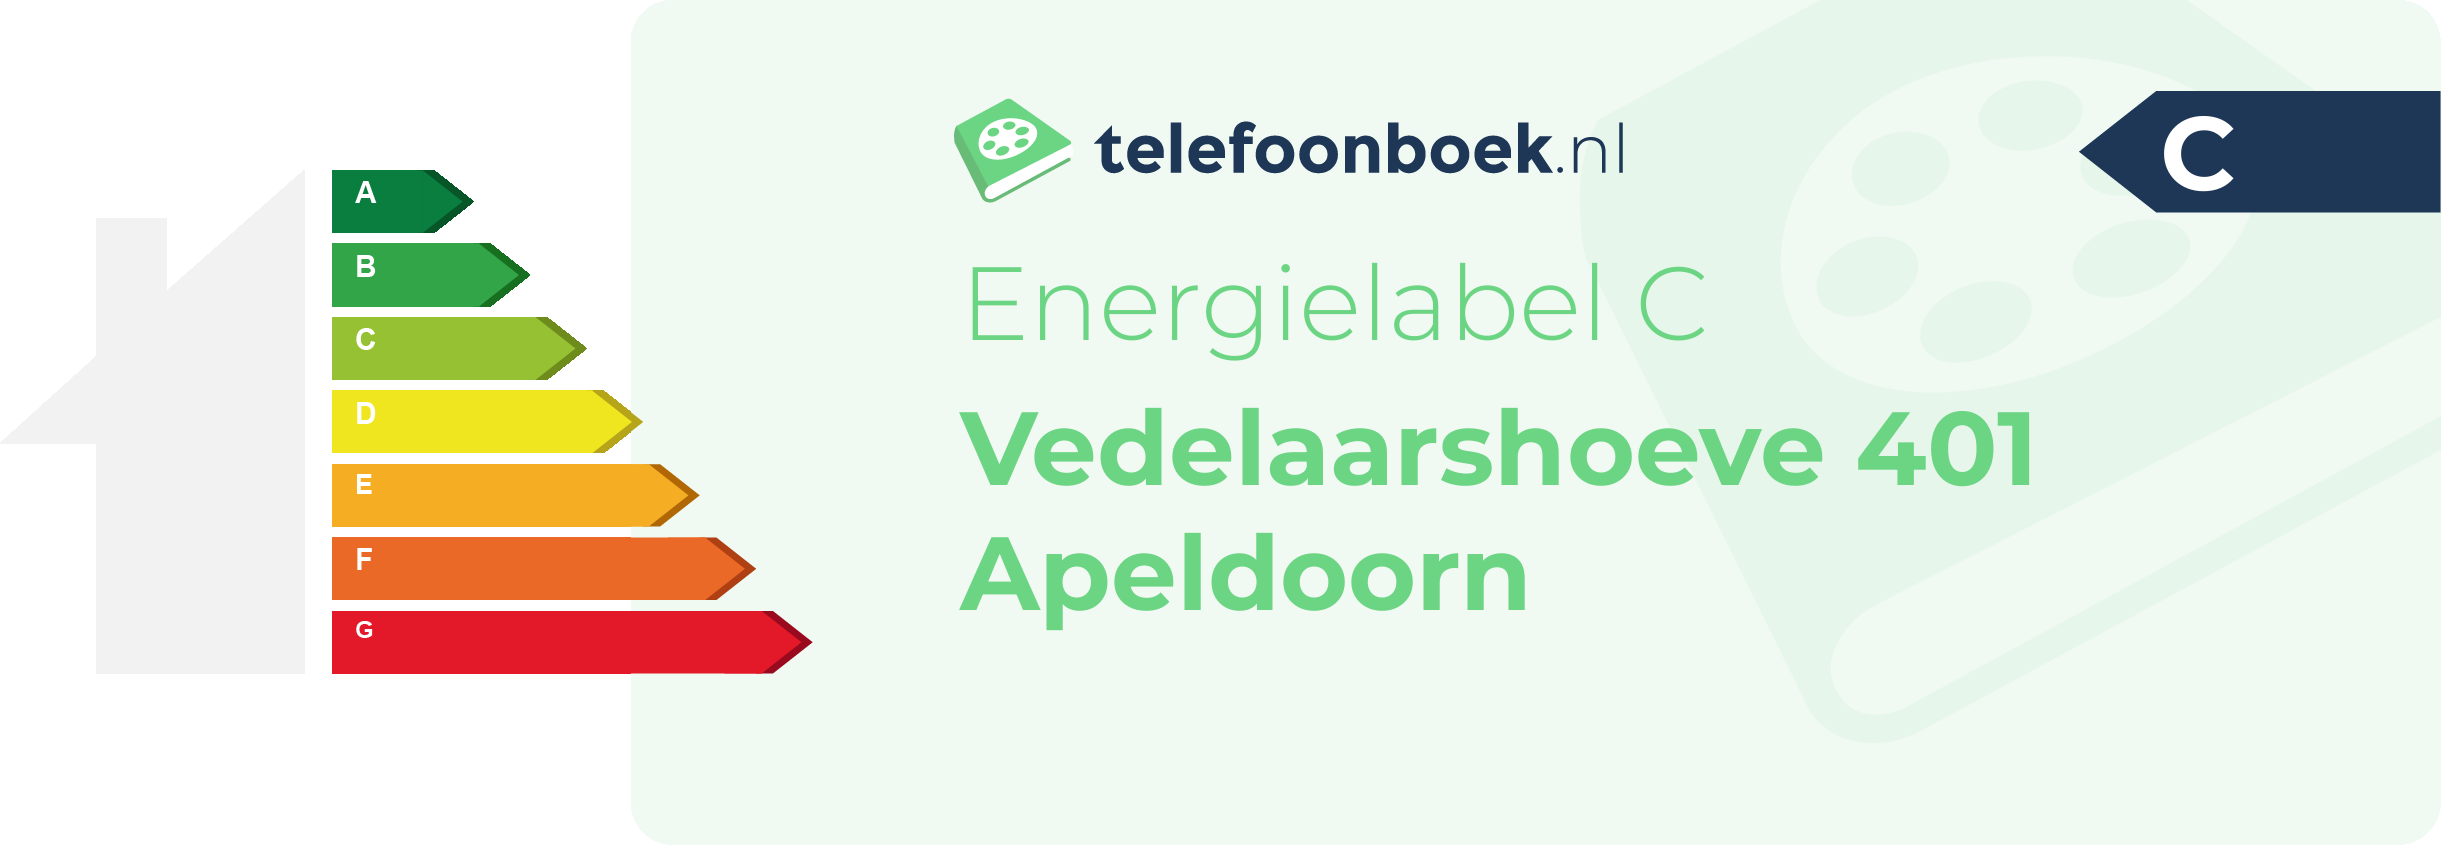 Energielabel Vedelaarshoeve 401 Apeldoorn